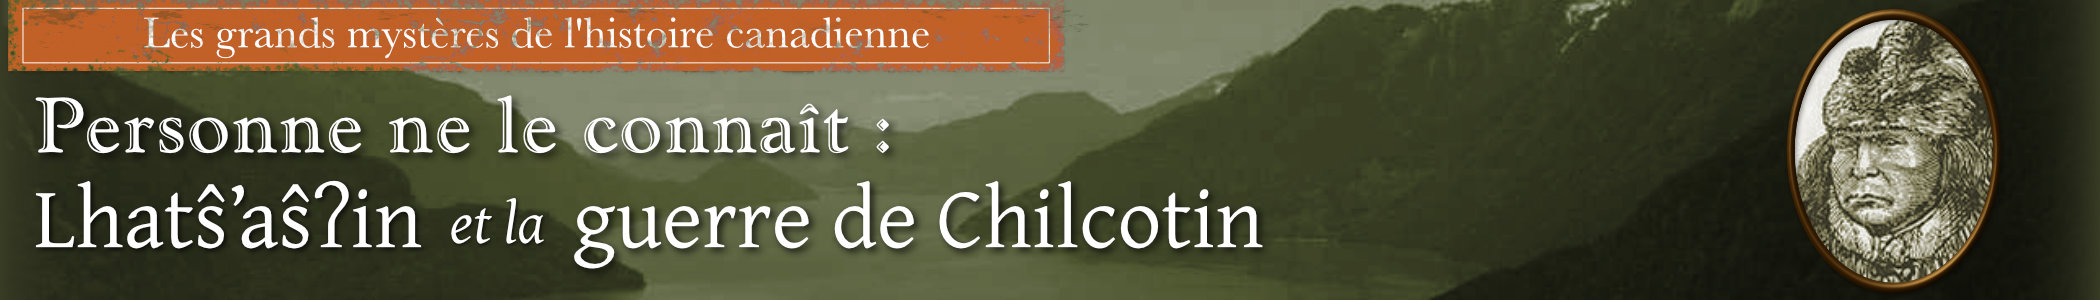 Personne ne connaît son nom: Klatsassin et la guerre de Chilcotin